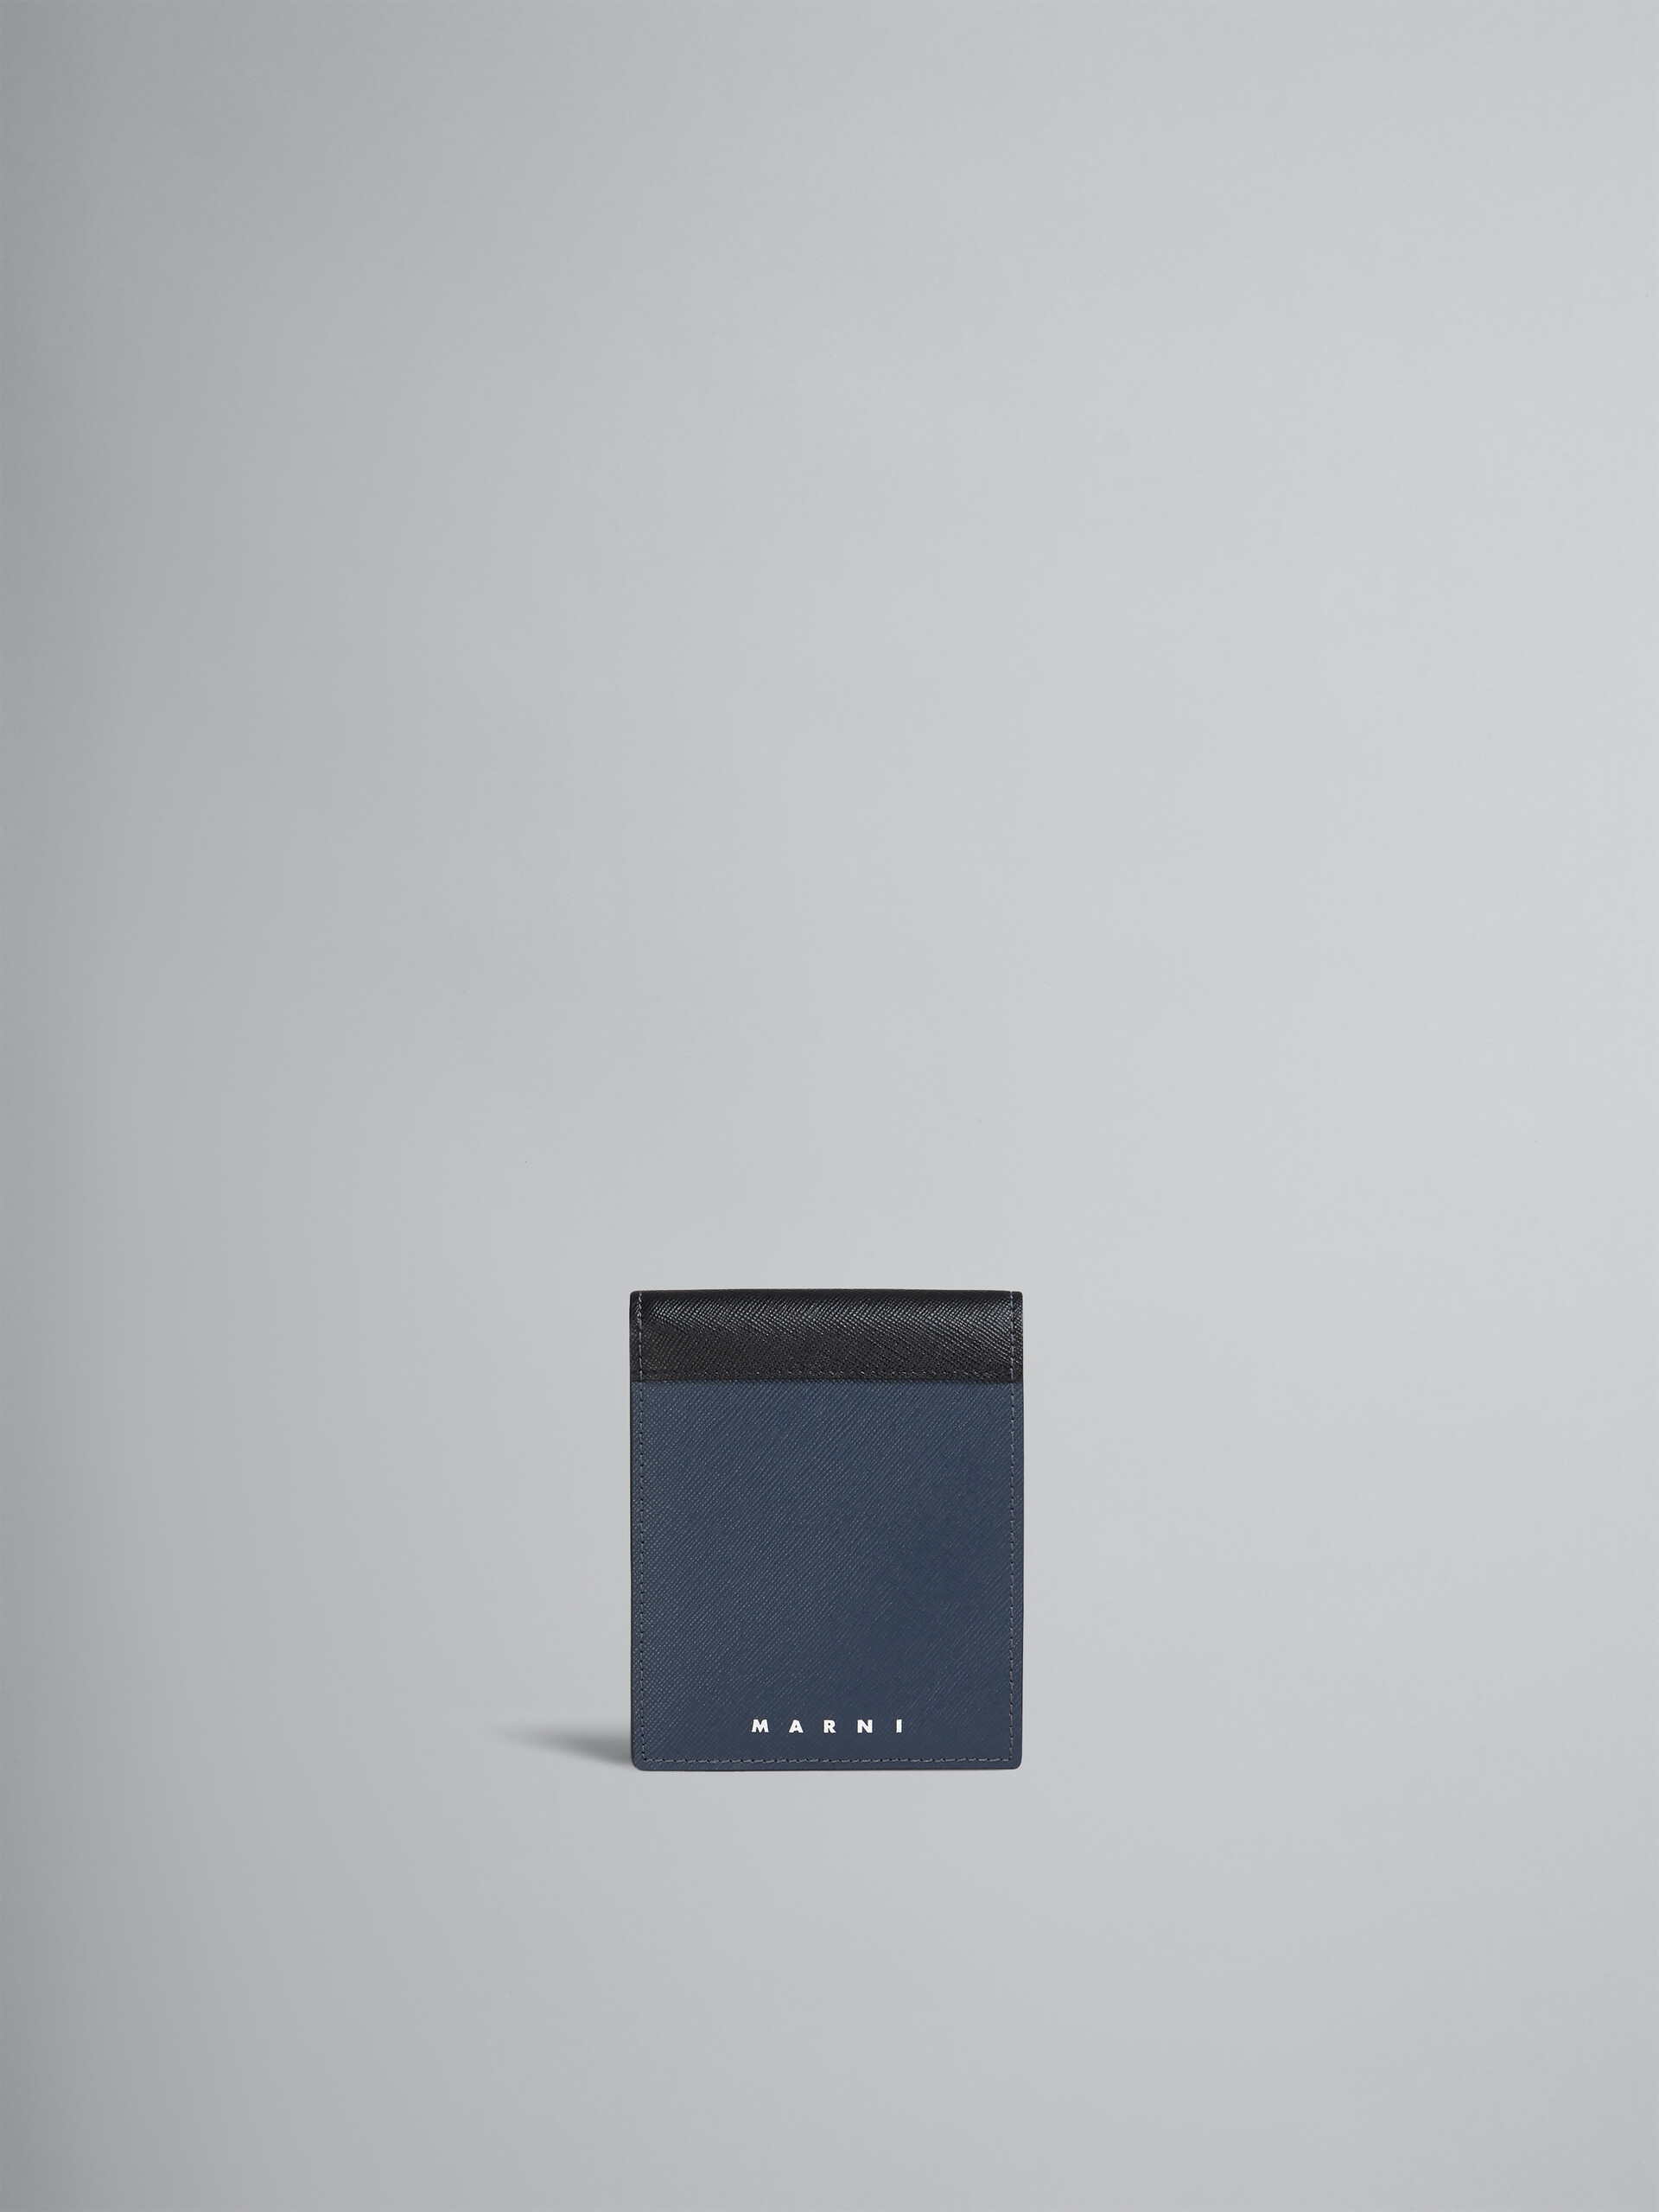 Portafoglio bi-fold in saffiano nero e blu - Portafogli - Image 1